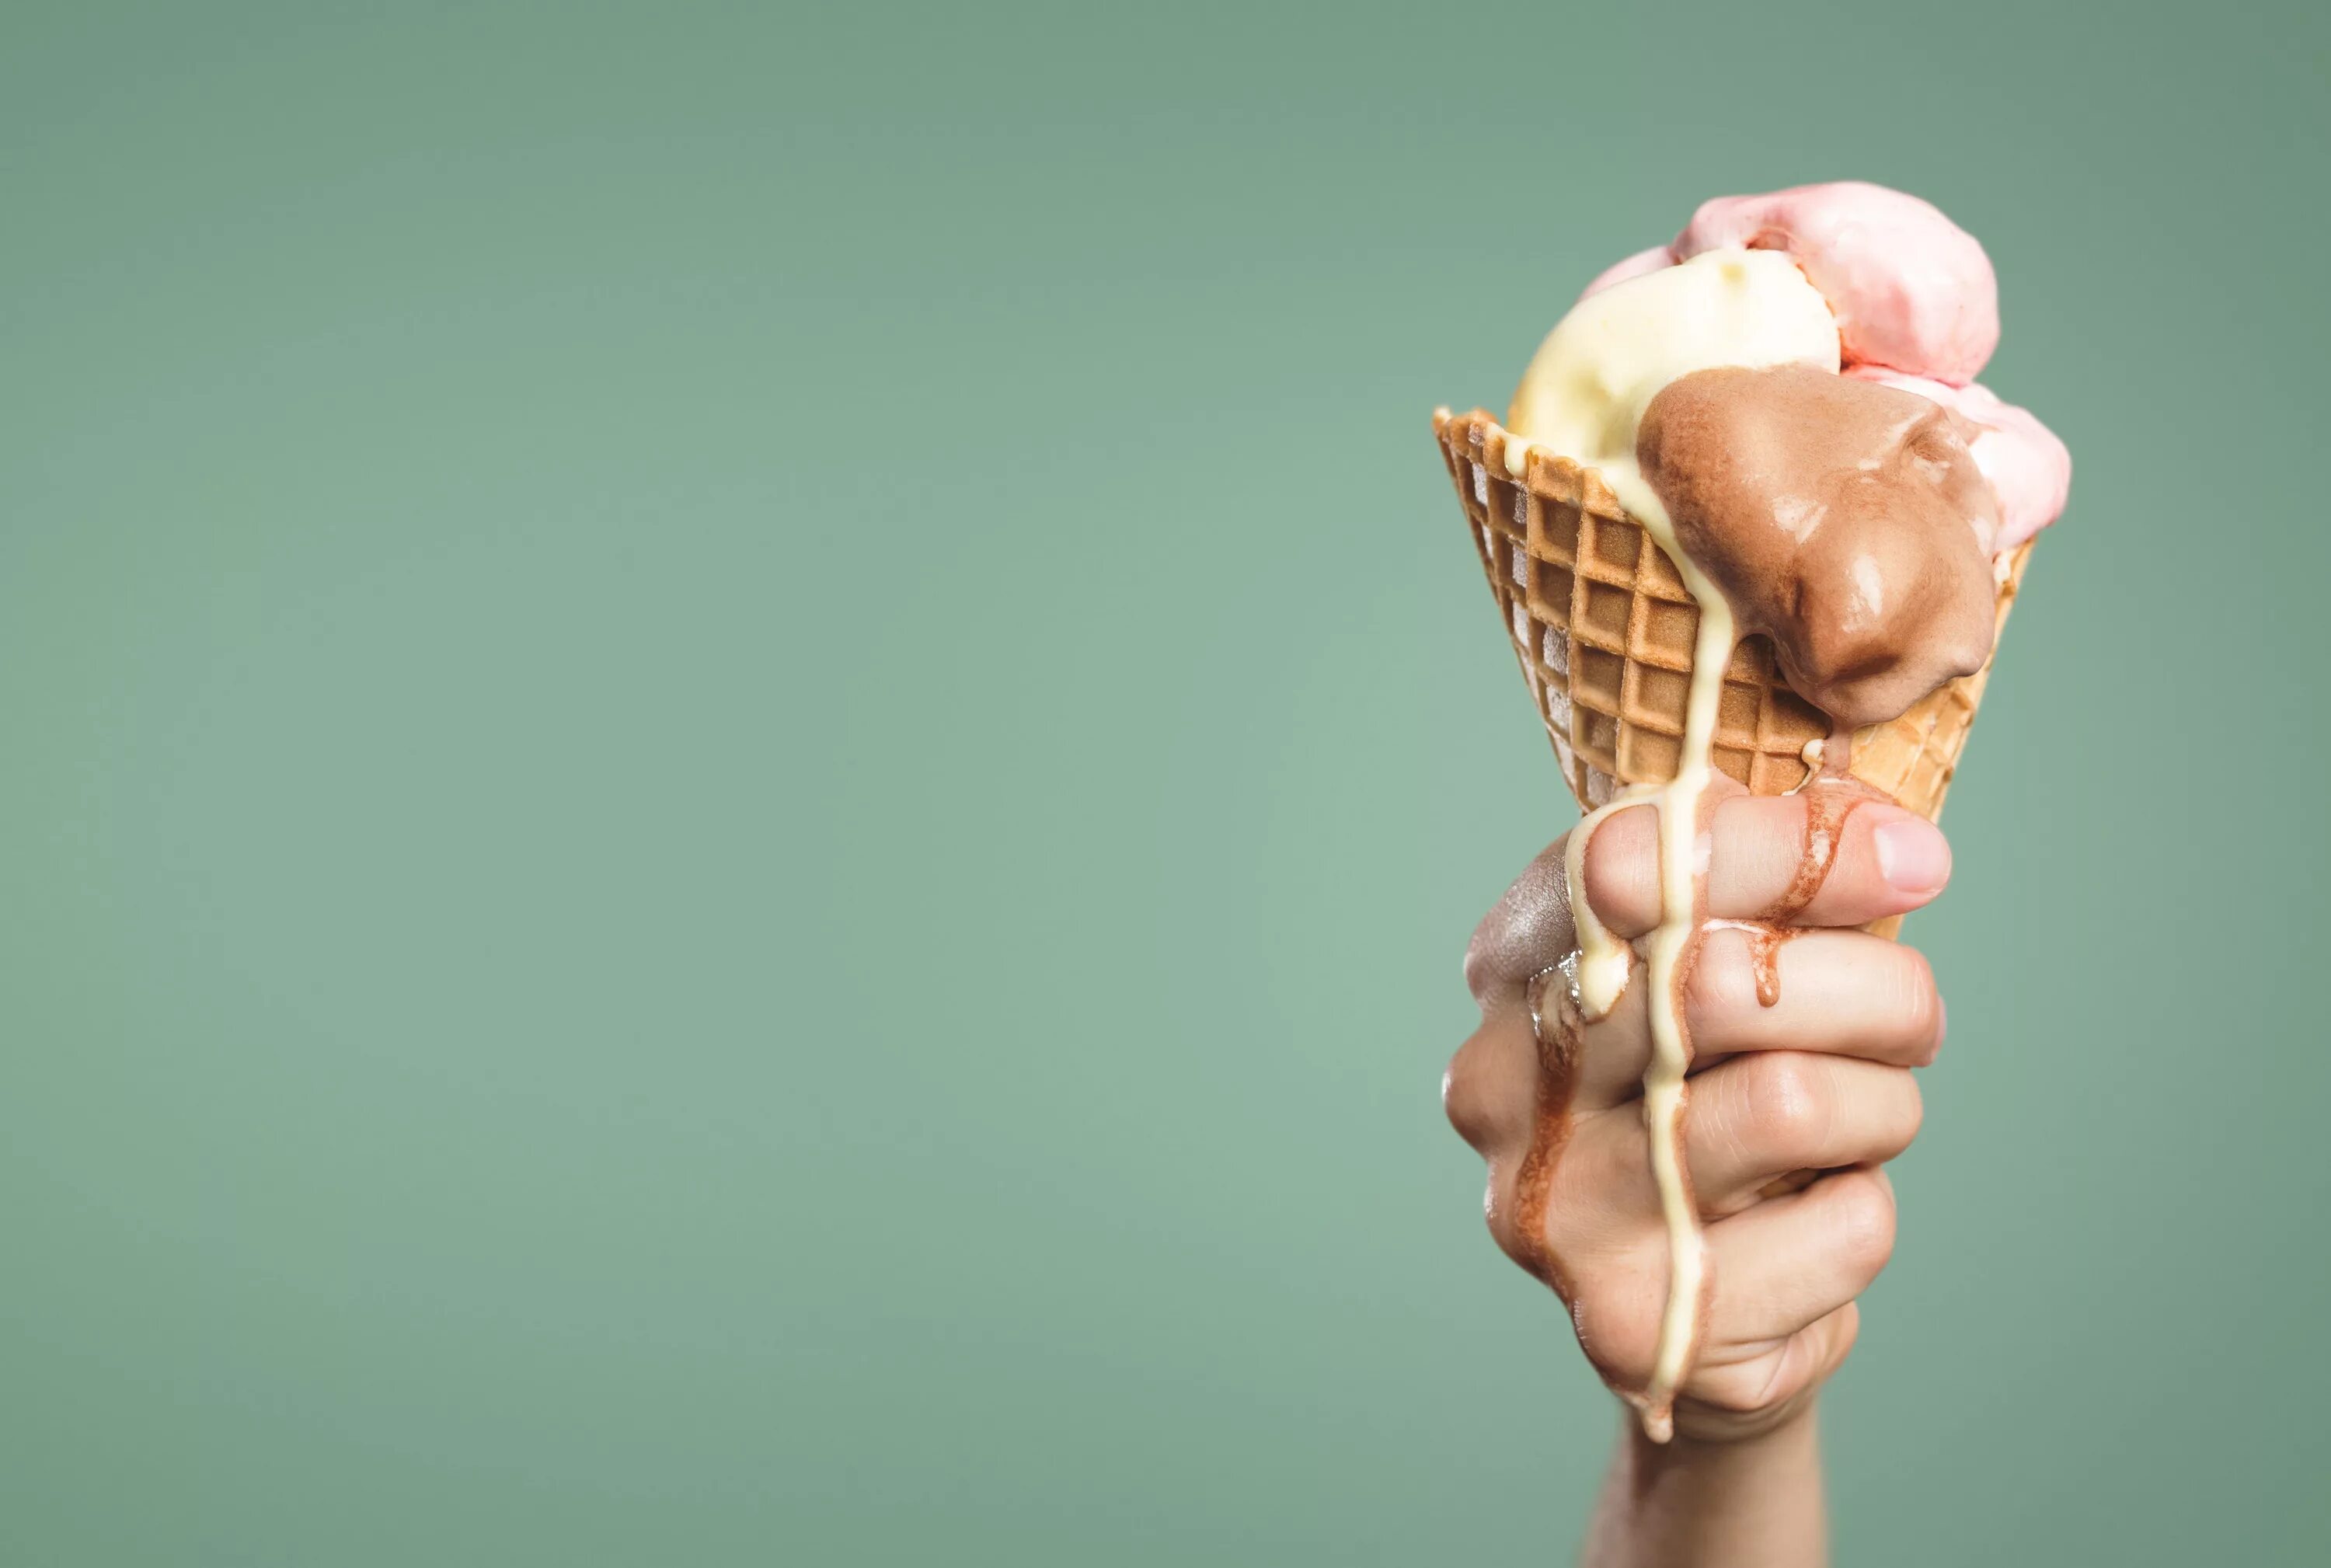 Растаяв в руках. Растаявшее мороженое. Мороженое в руке. Тающее мороженое. Растаявшее мороженое в руке.